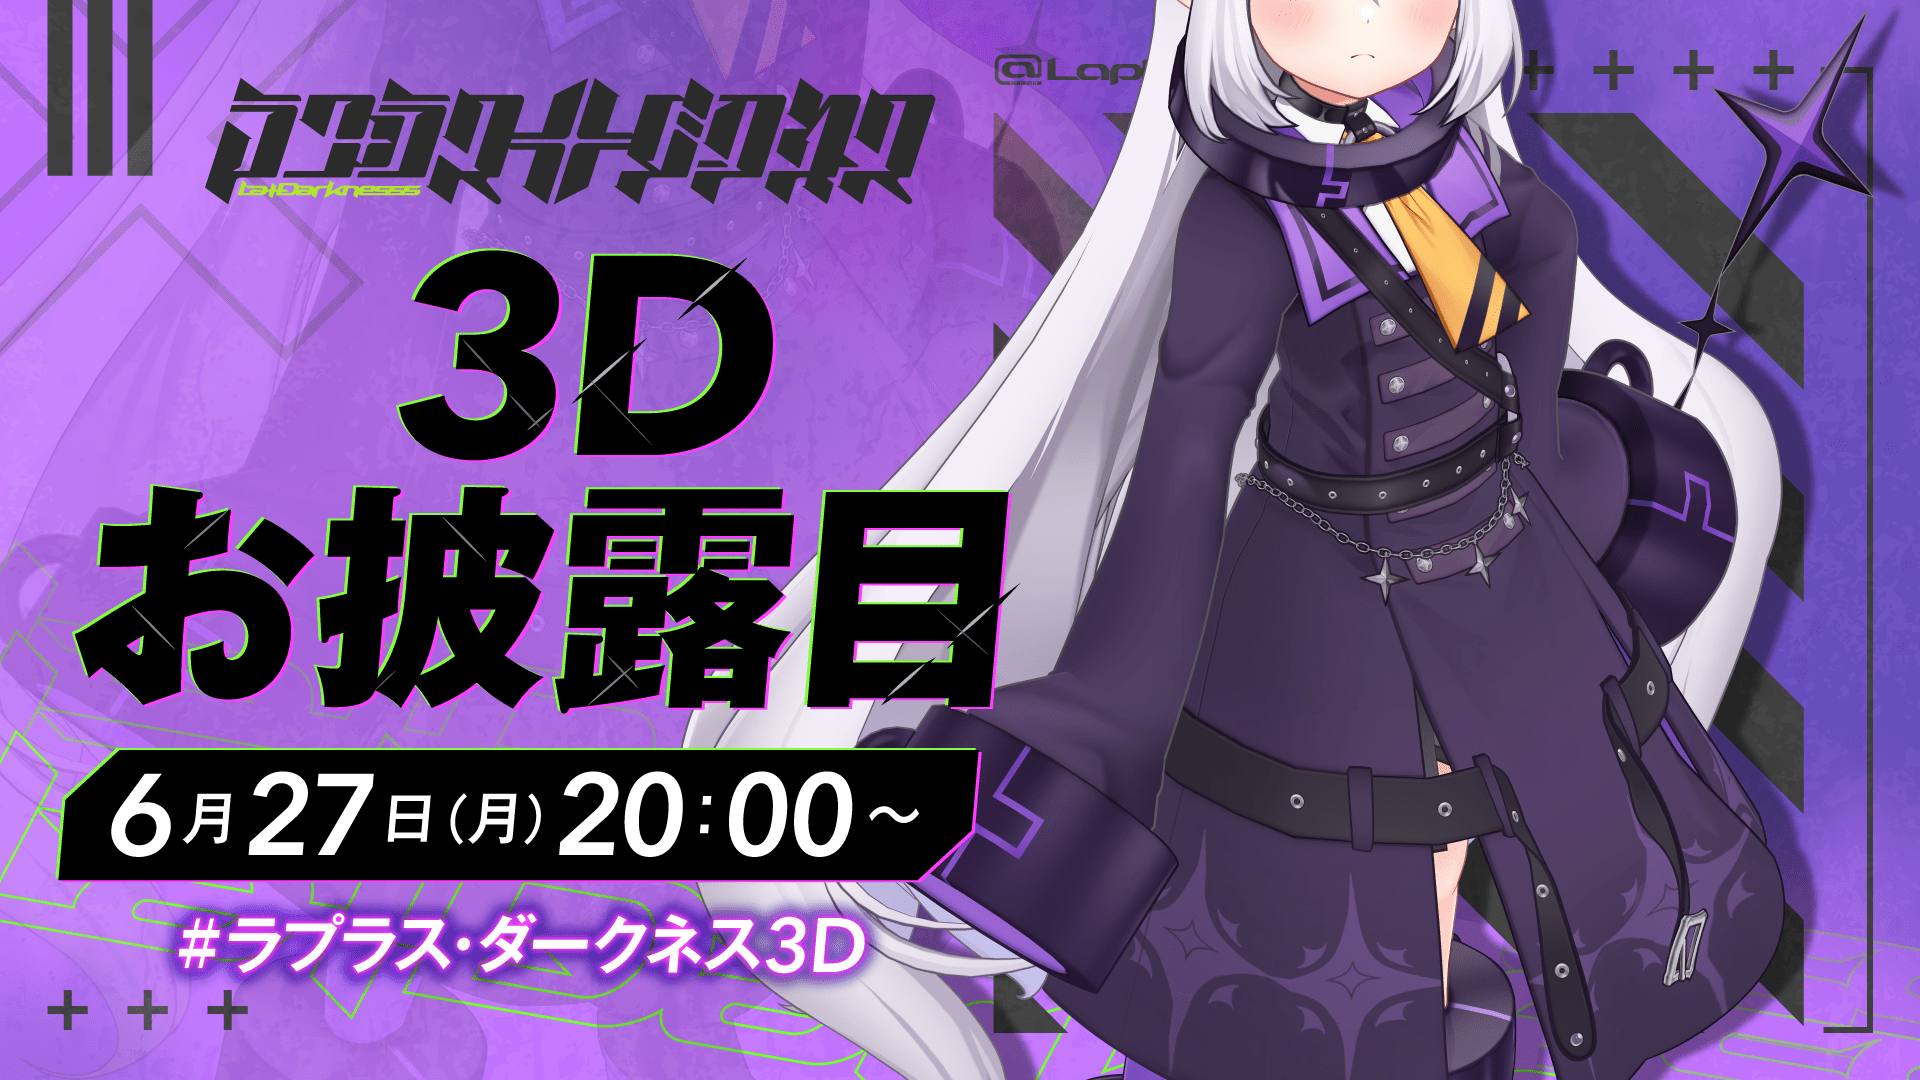 "ラプラス・ダークネス"3Dお披露目